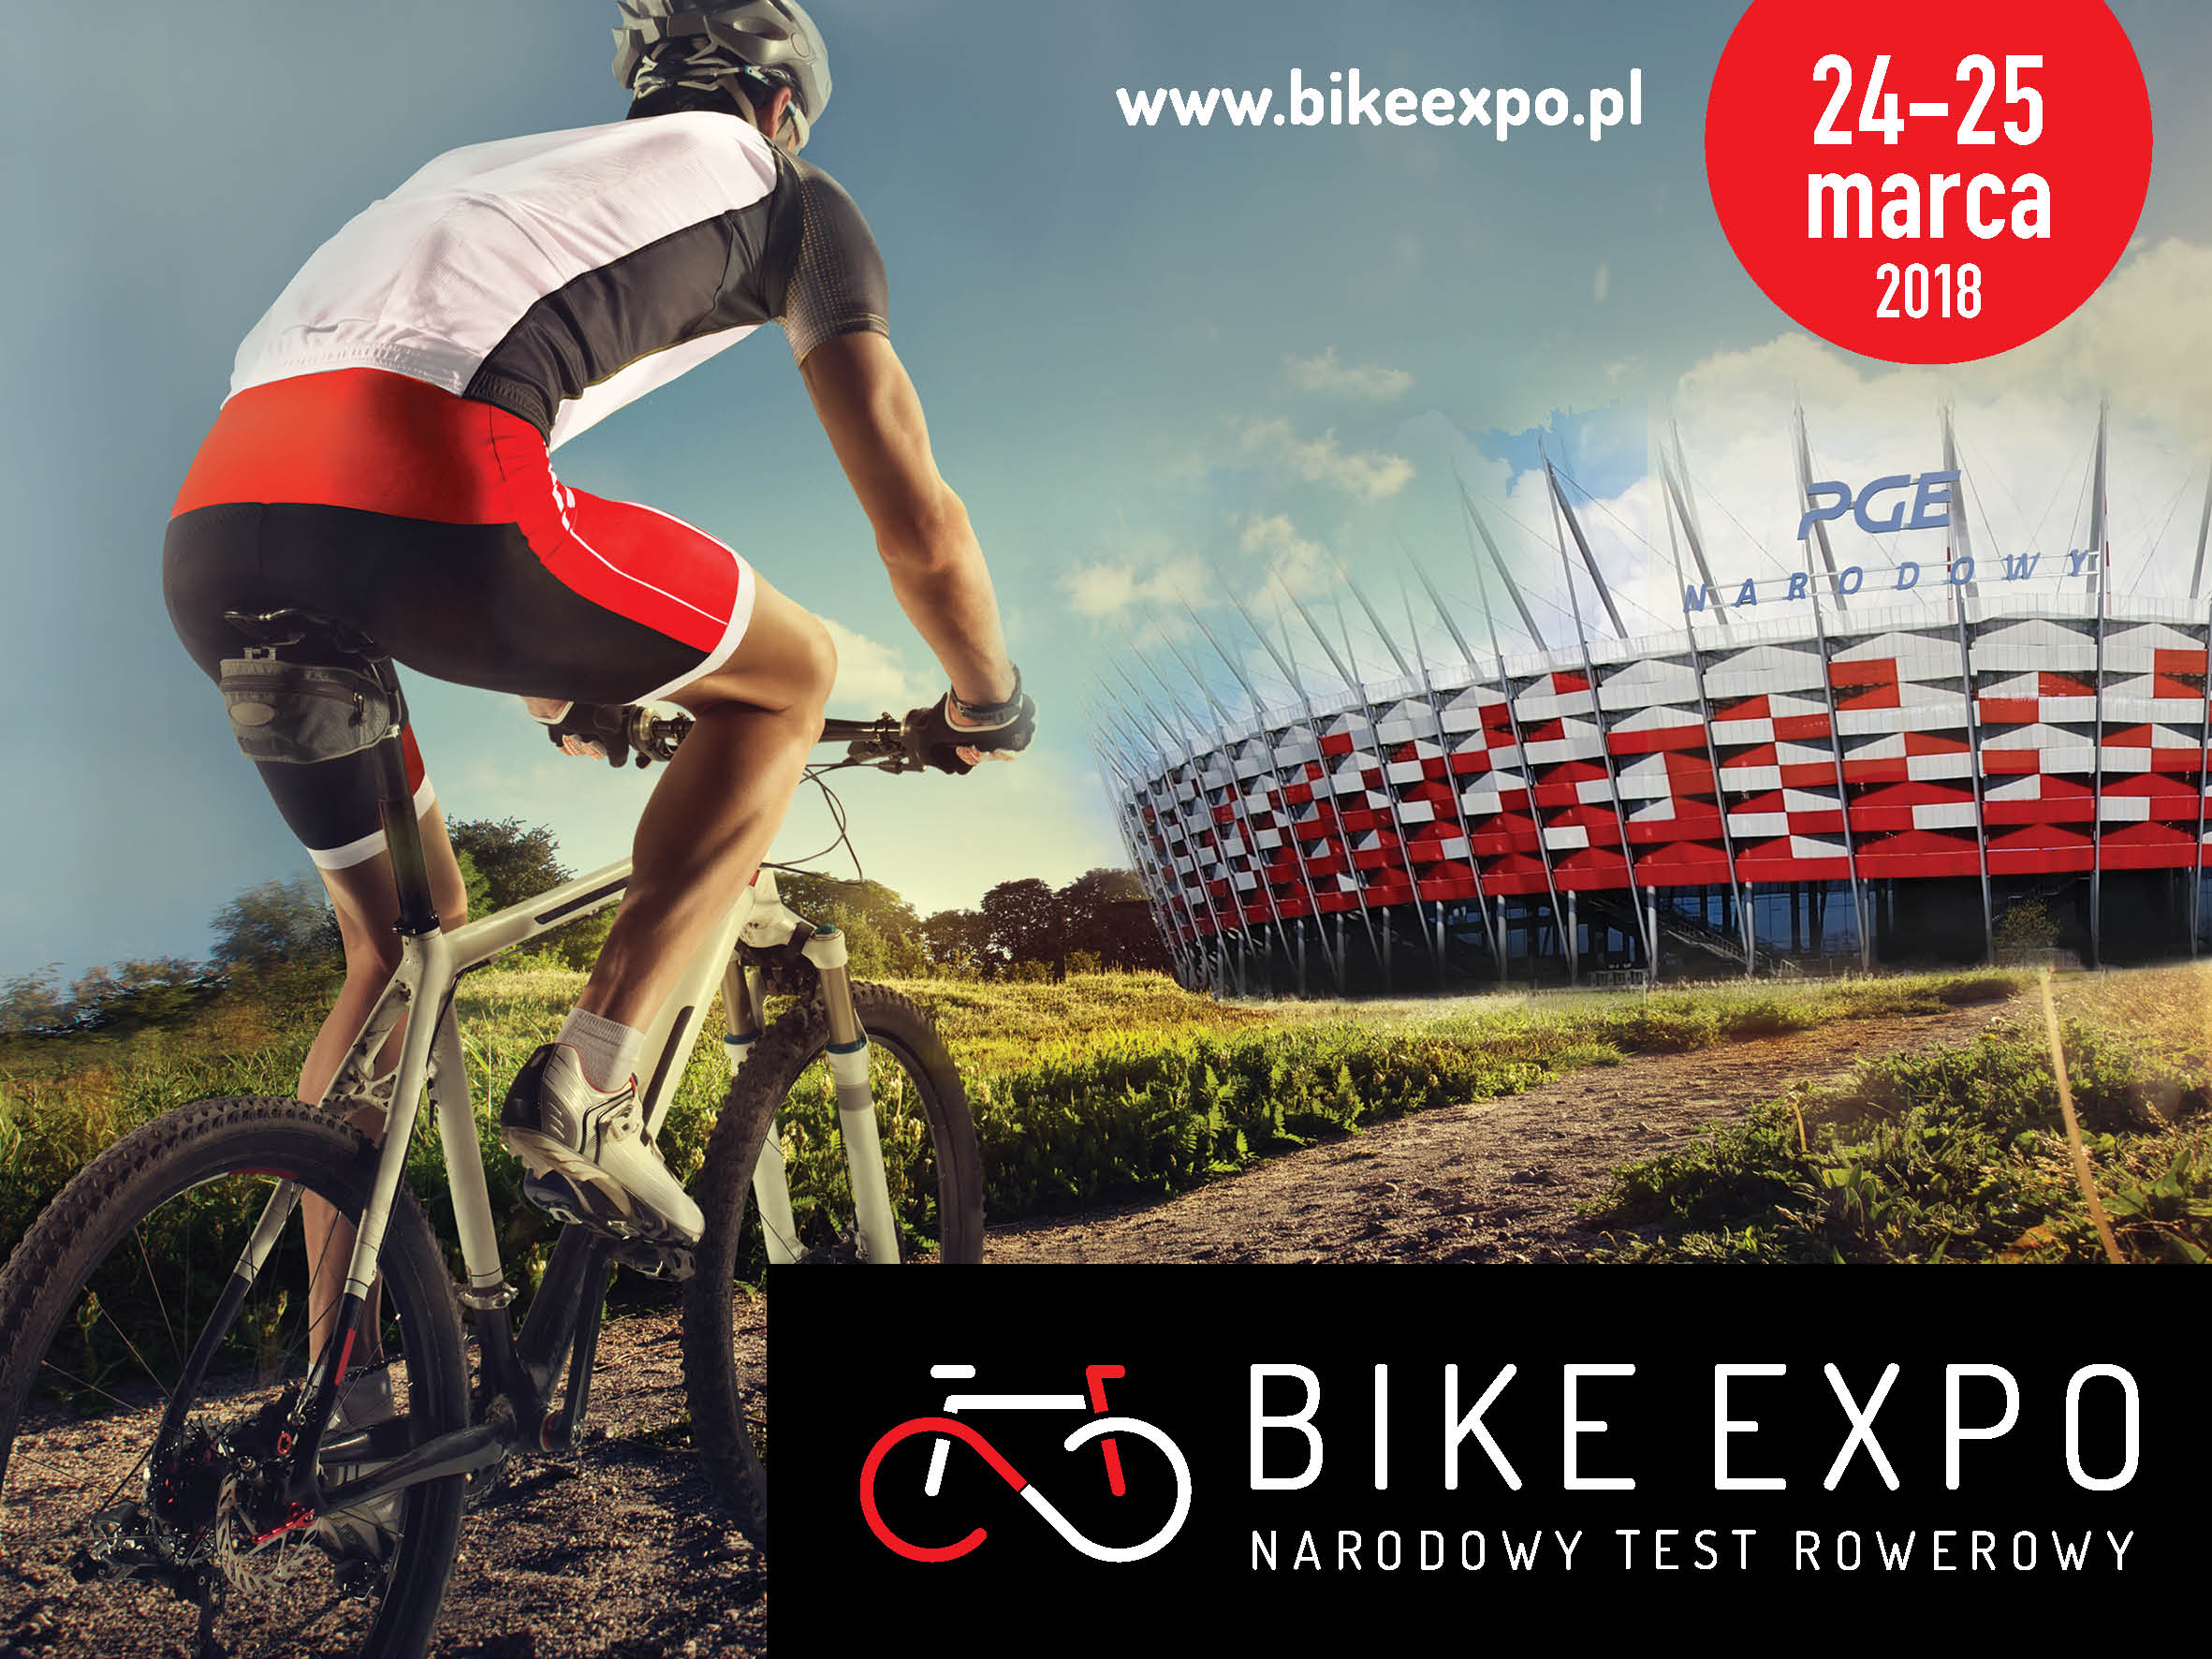 Bike Expo – Narodowy test rowerowy 2018